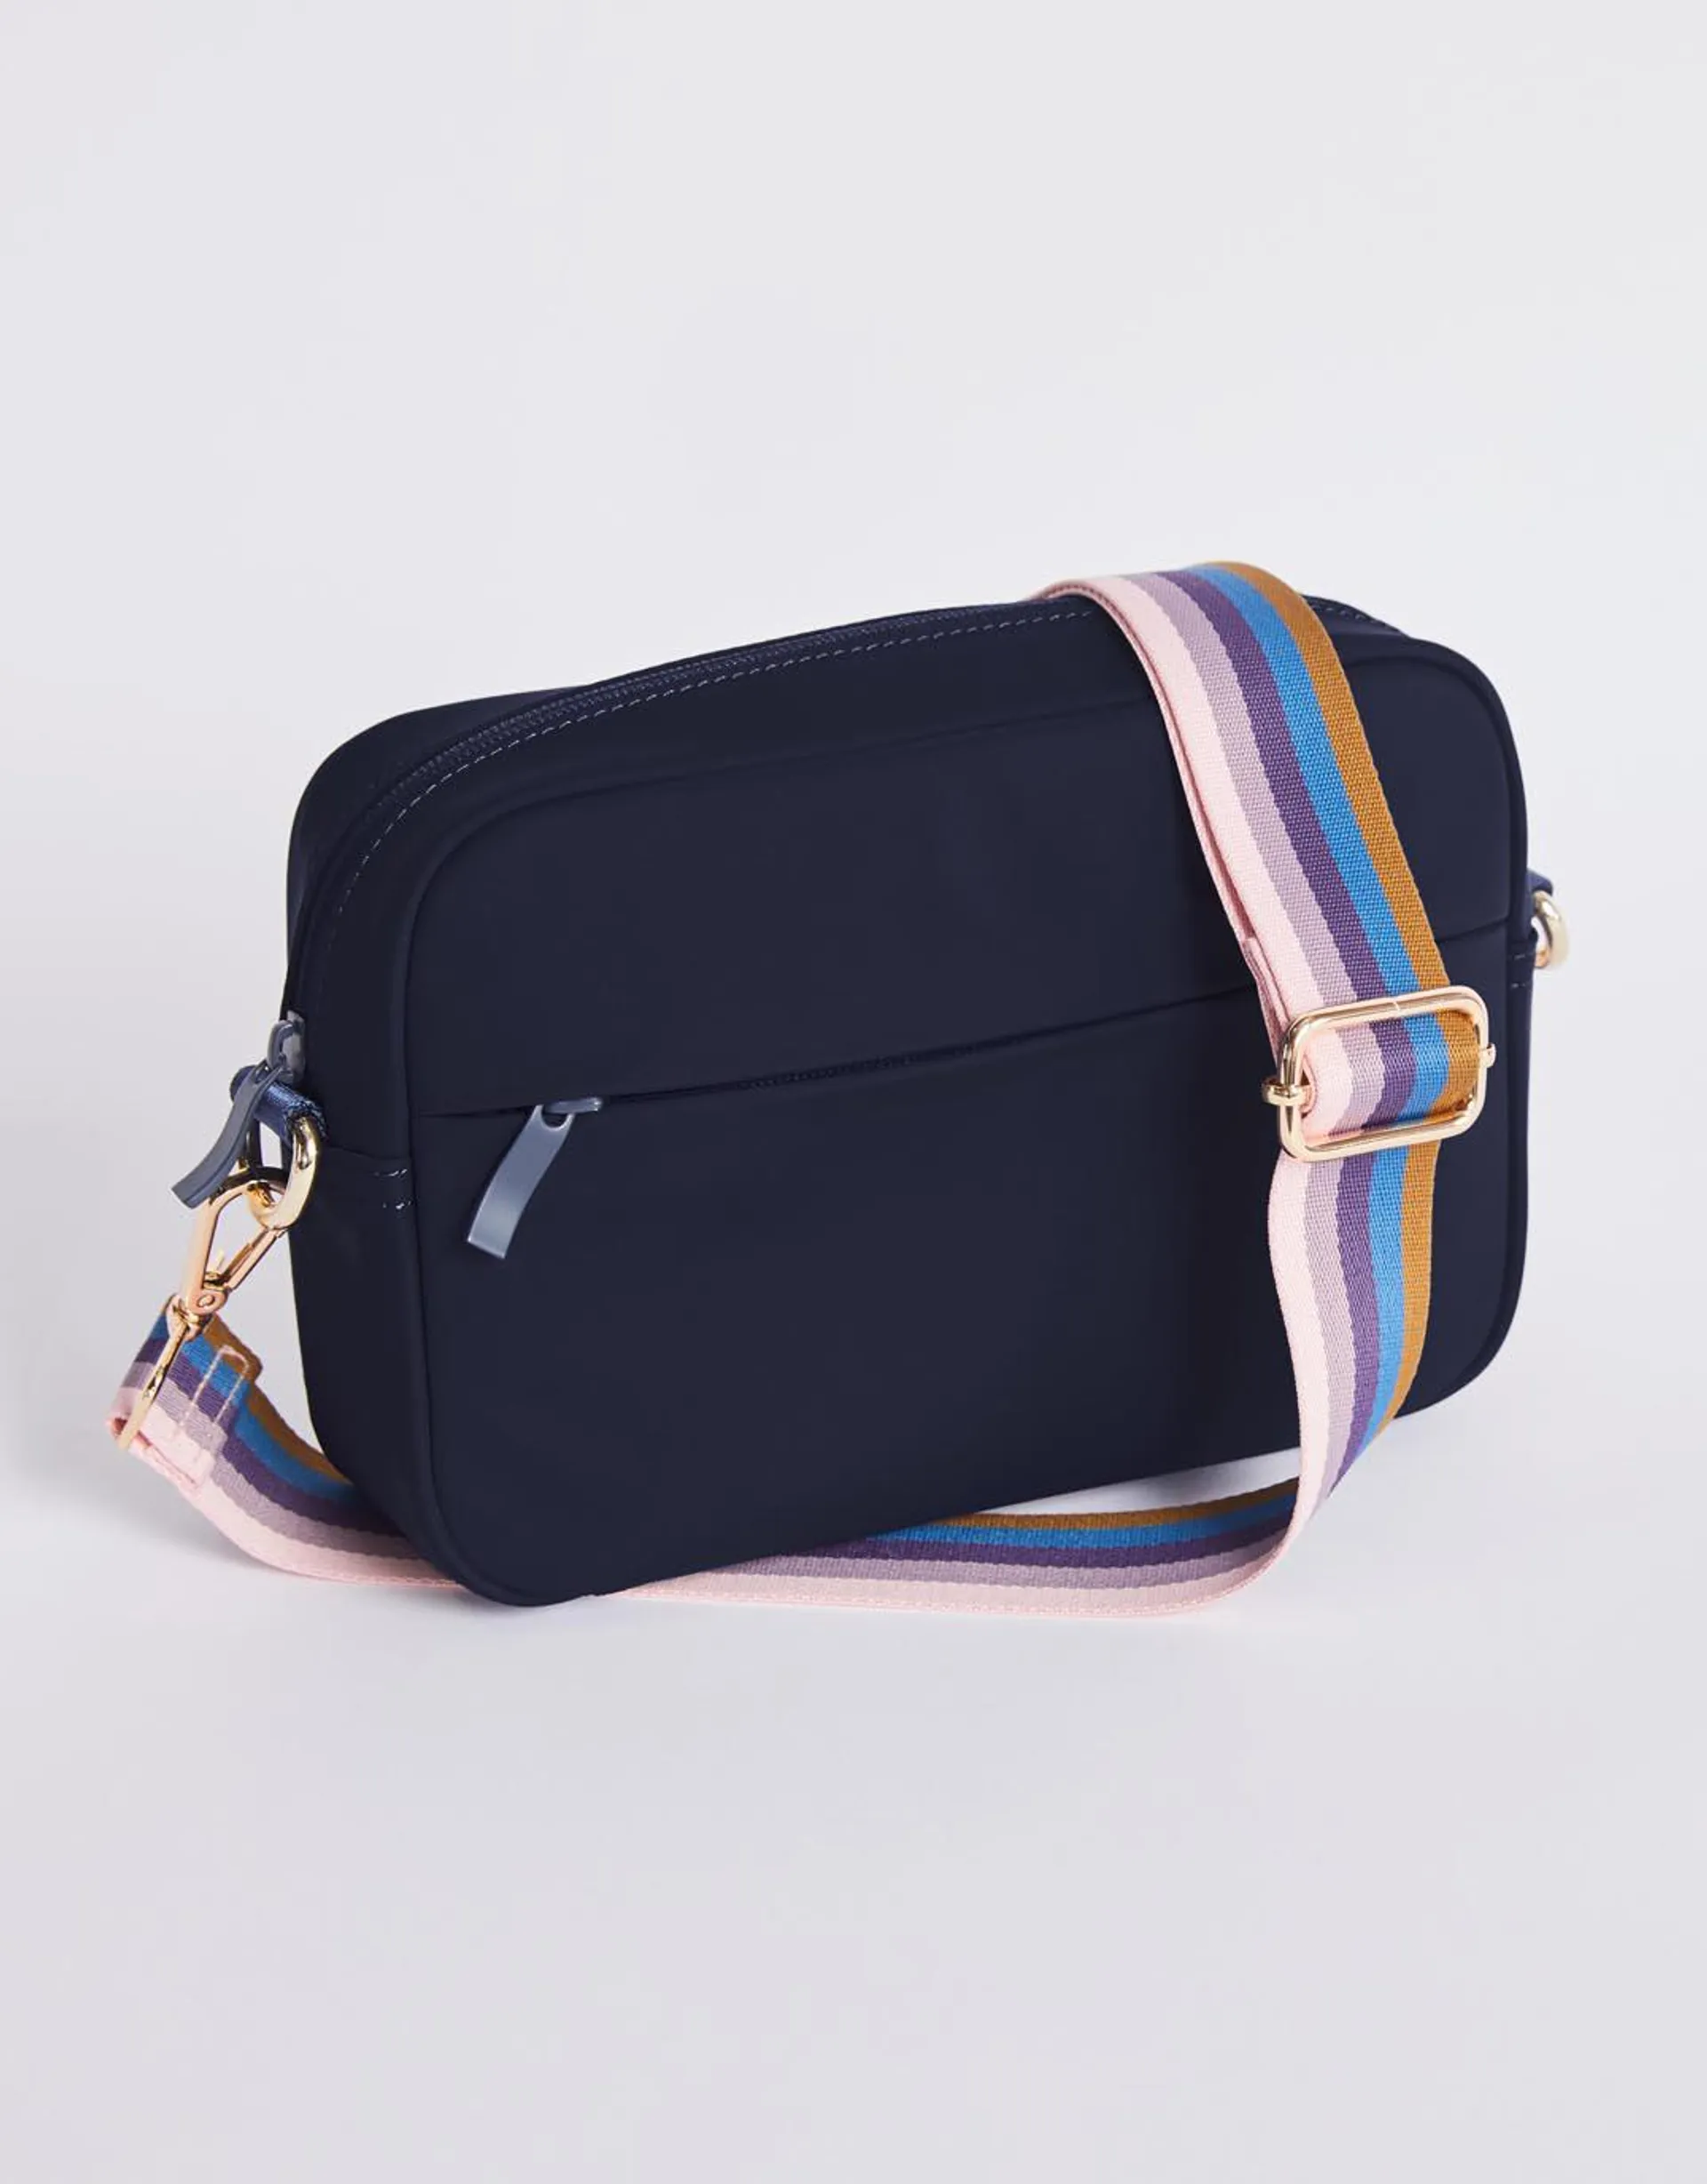 Off-Duty Crossbody Bag - Navy/Lilac Stripe